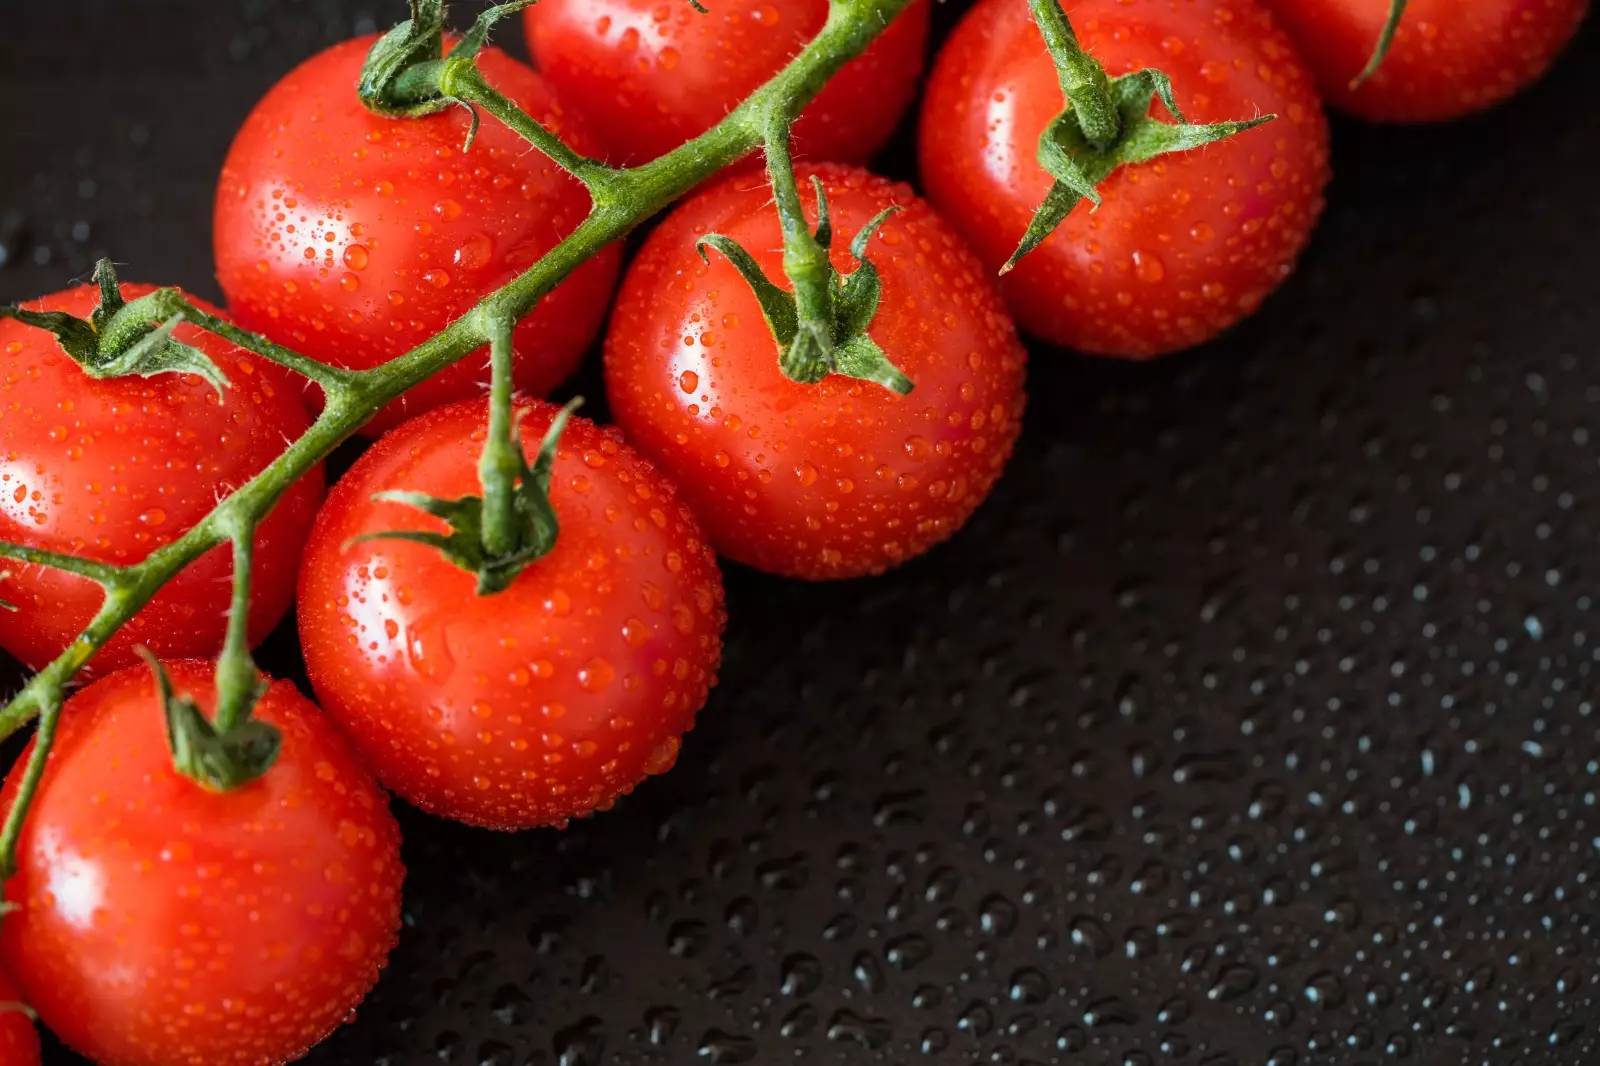 Ölkənin pomidor satışından gəliri azalır